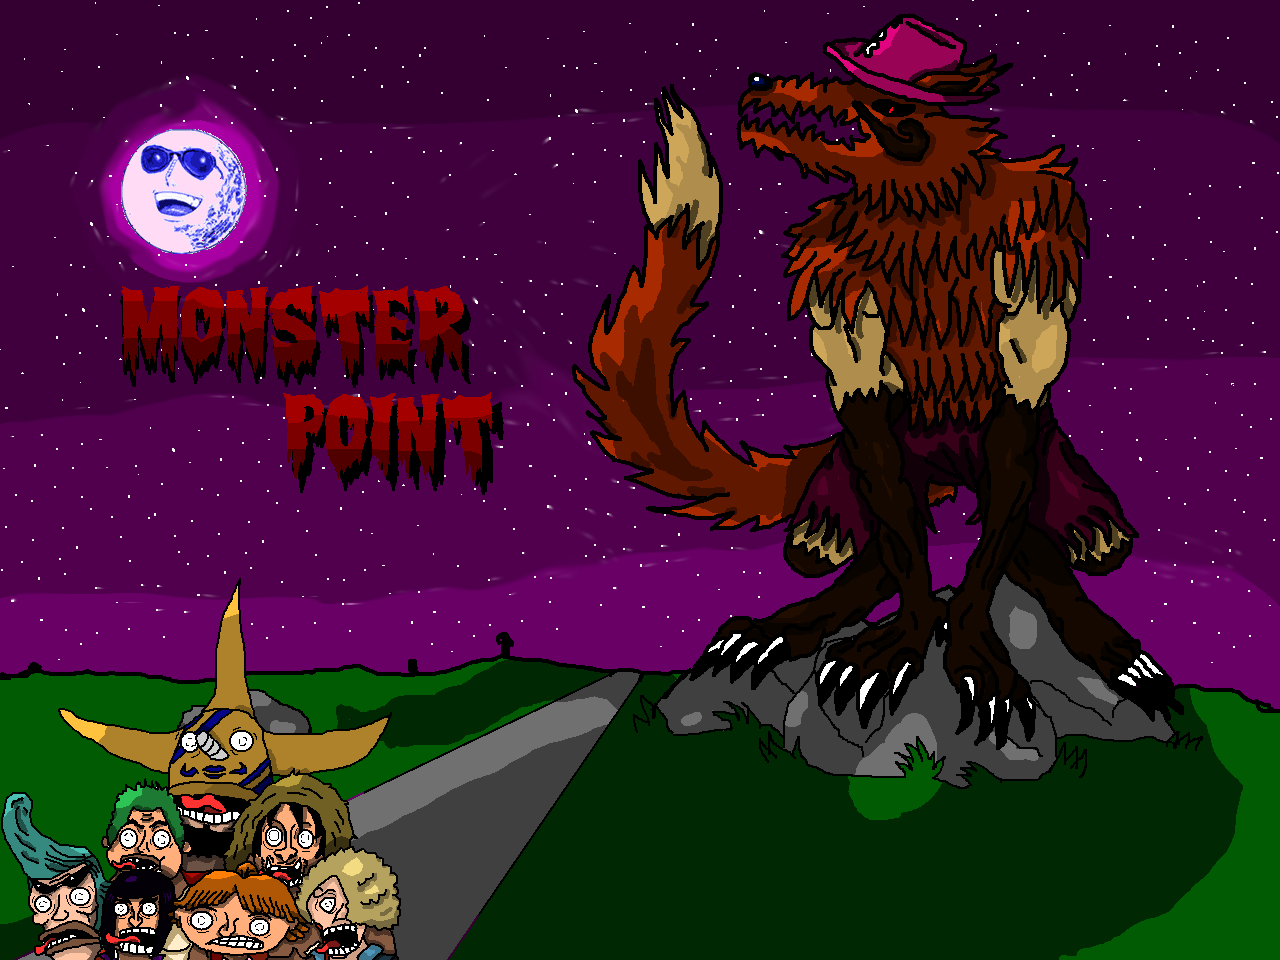 Monster point: Chopper